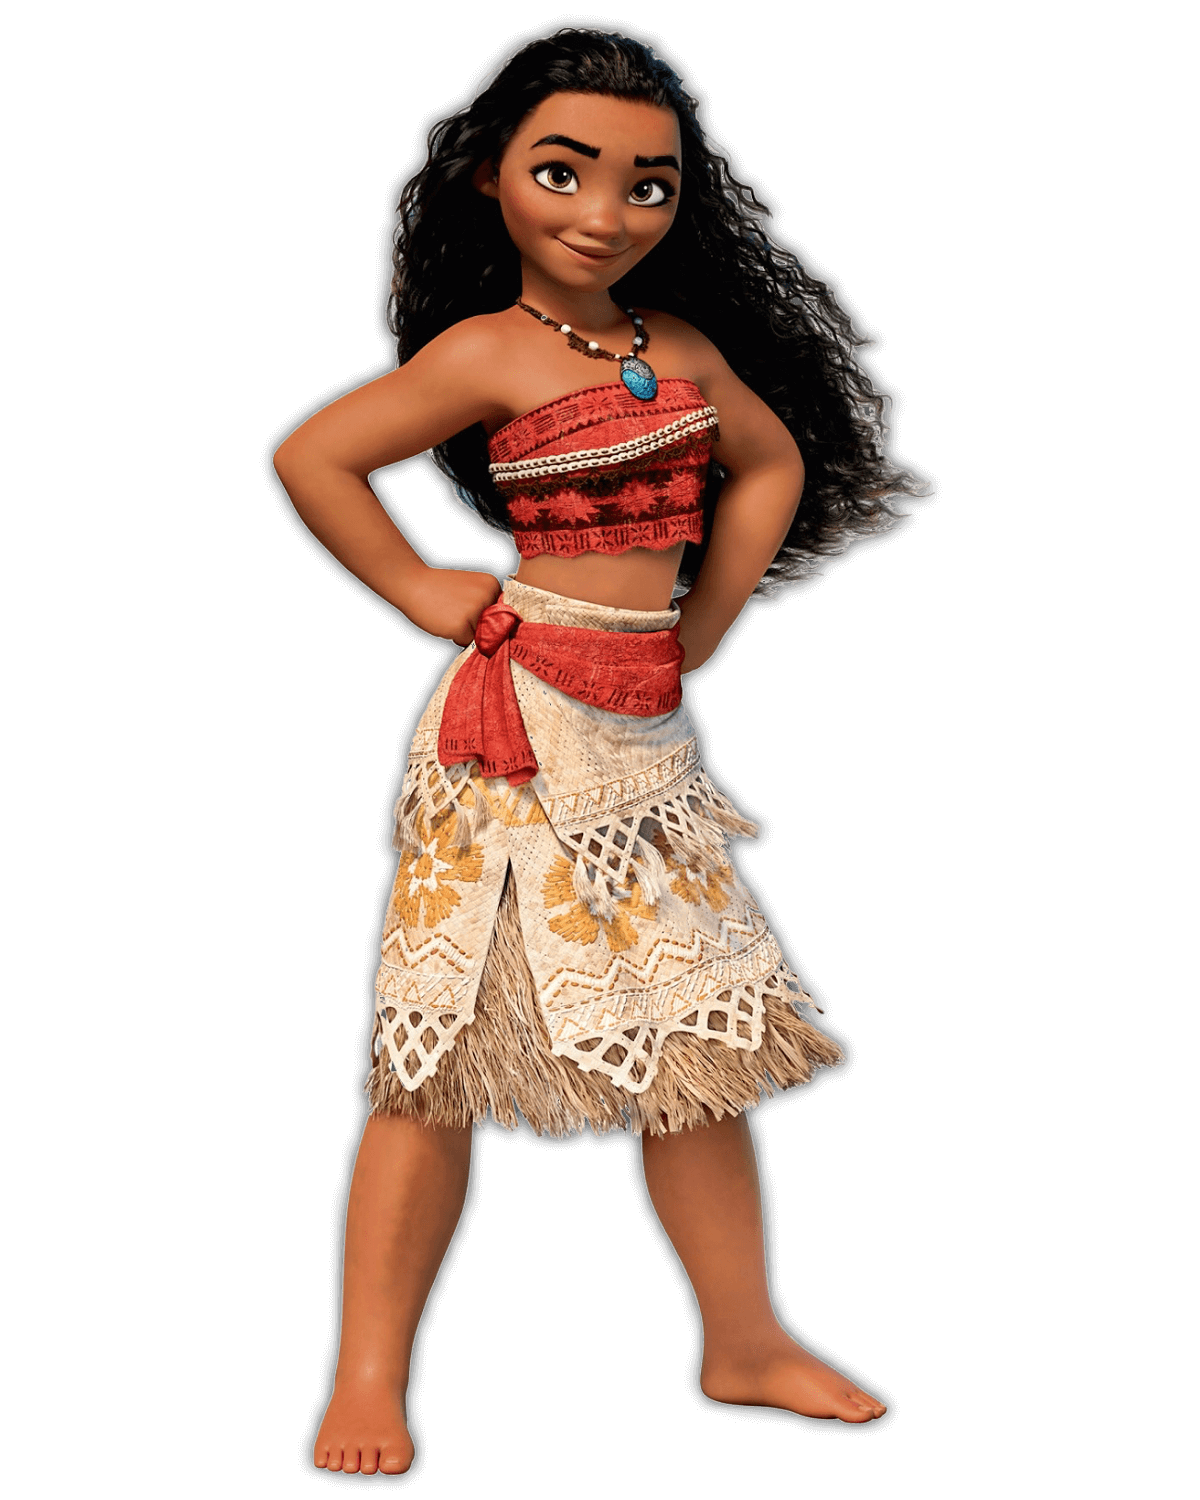 Disney Prinzessin Vaiana hat lange, lockige dunkelbraue Haare. Sie trägt ein rotes, bauchfreies Oberteil und einen beige-braunen Rock